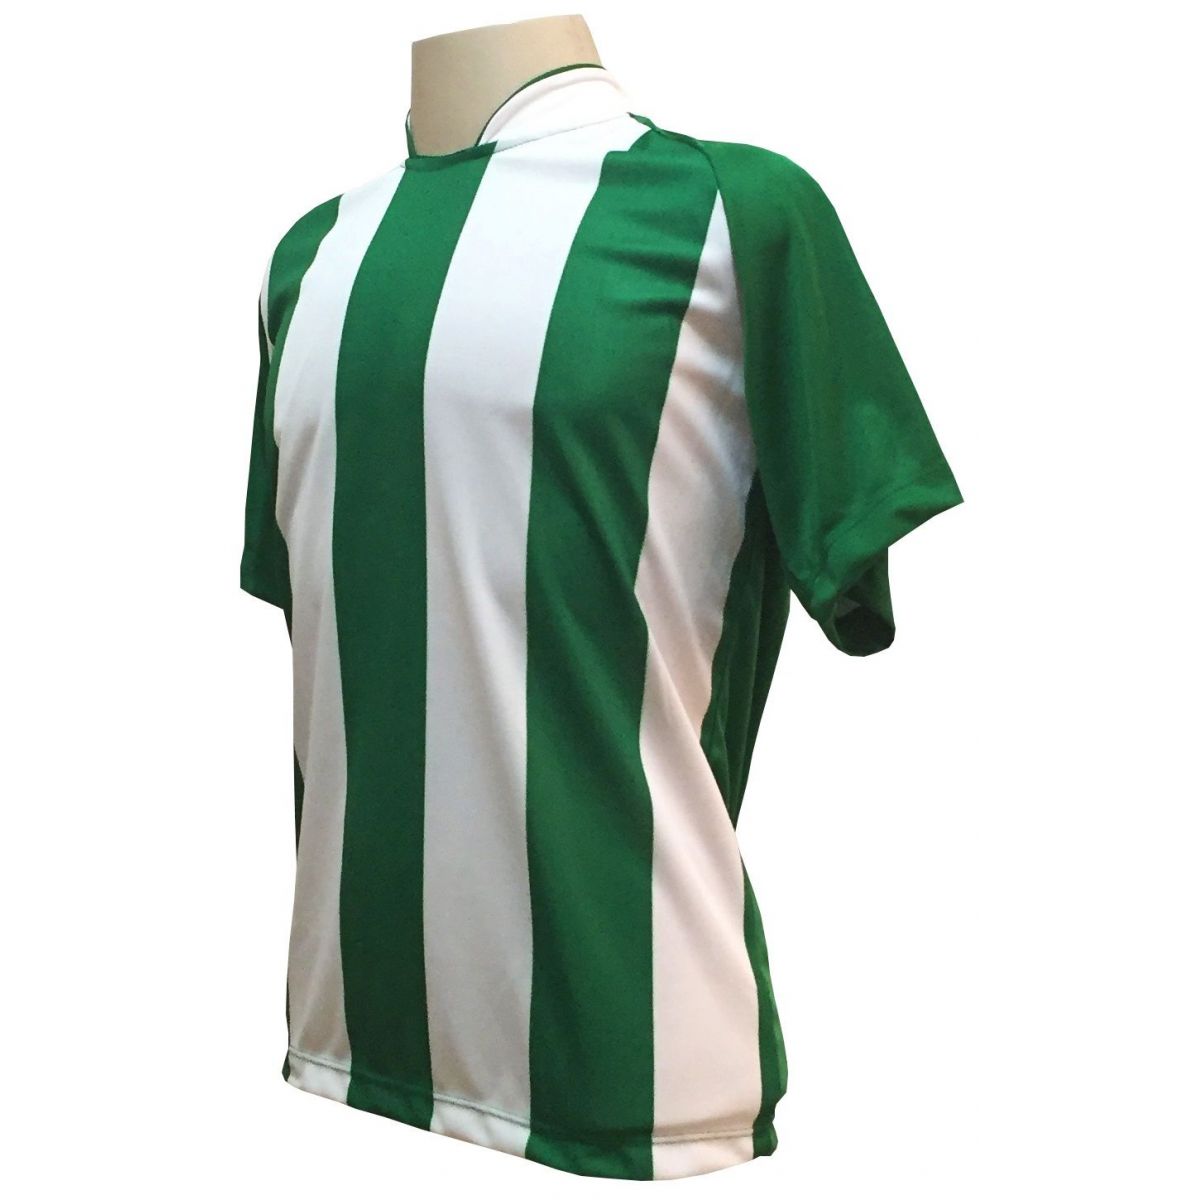 Uniforme Esportivo com 20 camisas modelo Milan Verde/Branco + 20 calções modelo Madrid + 1 Goleiro + Brindes